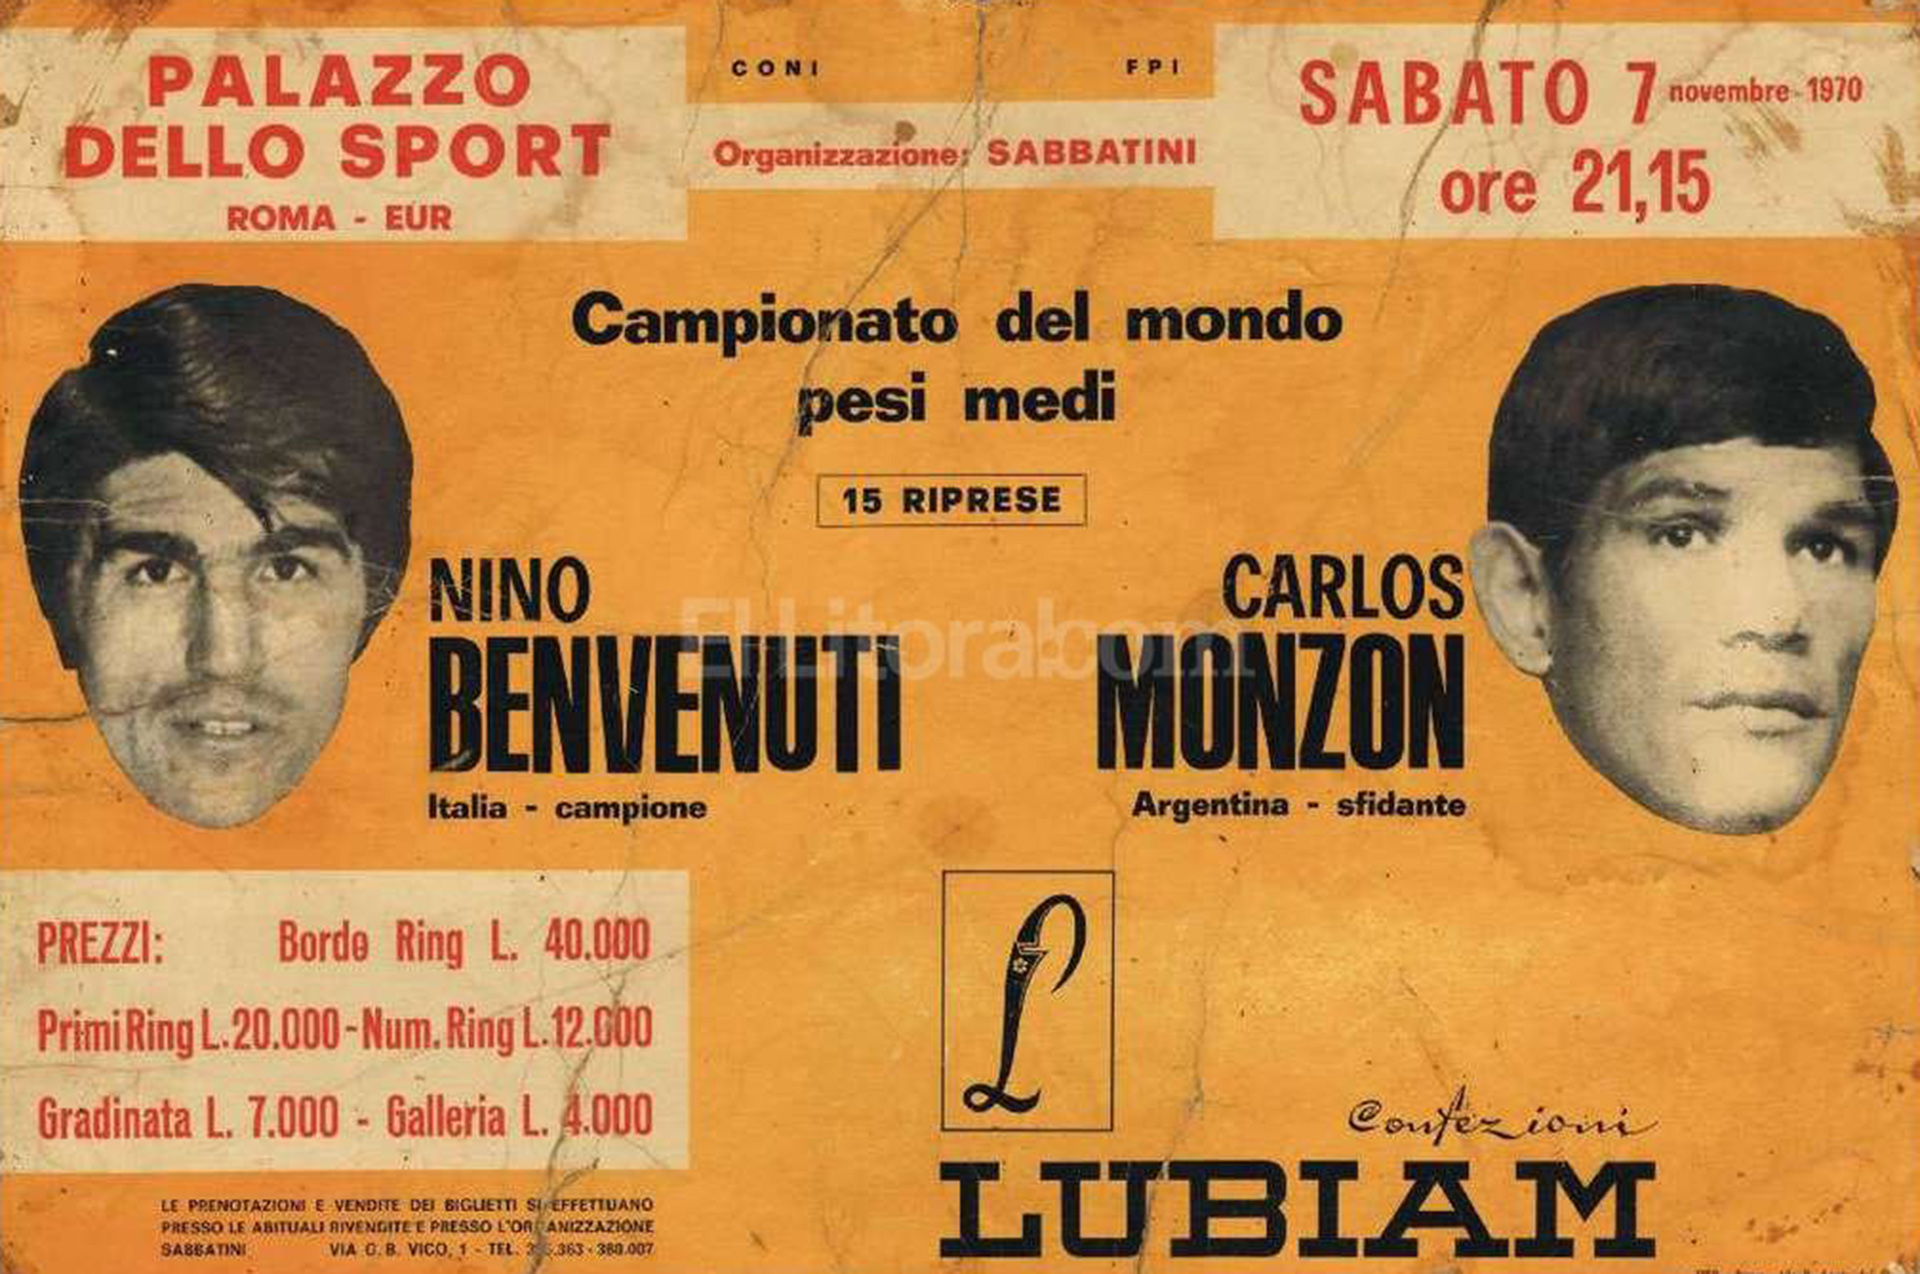 Ticket de la pelea que consagró a Monzón en Italia. A partir de allí todo cambió , no solo por el dinero que comenzó a ganar en las próximas veladas